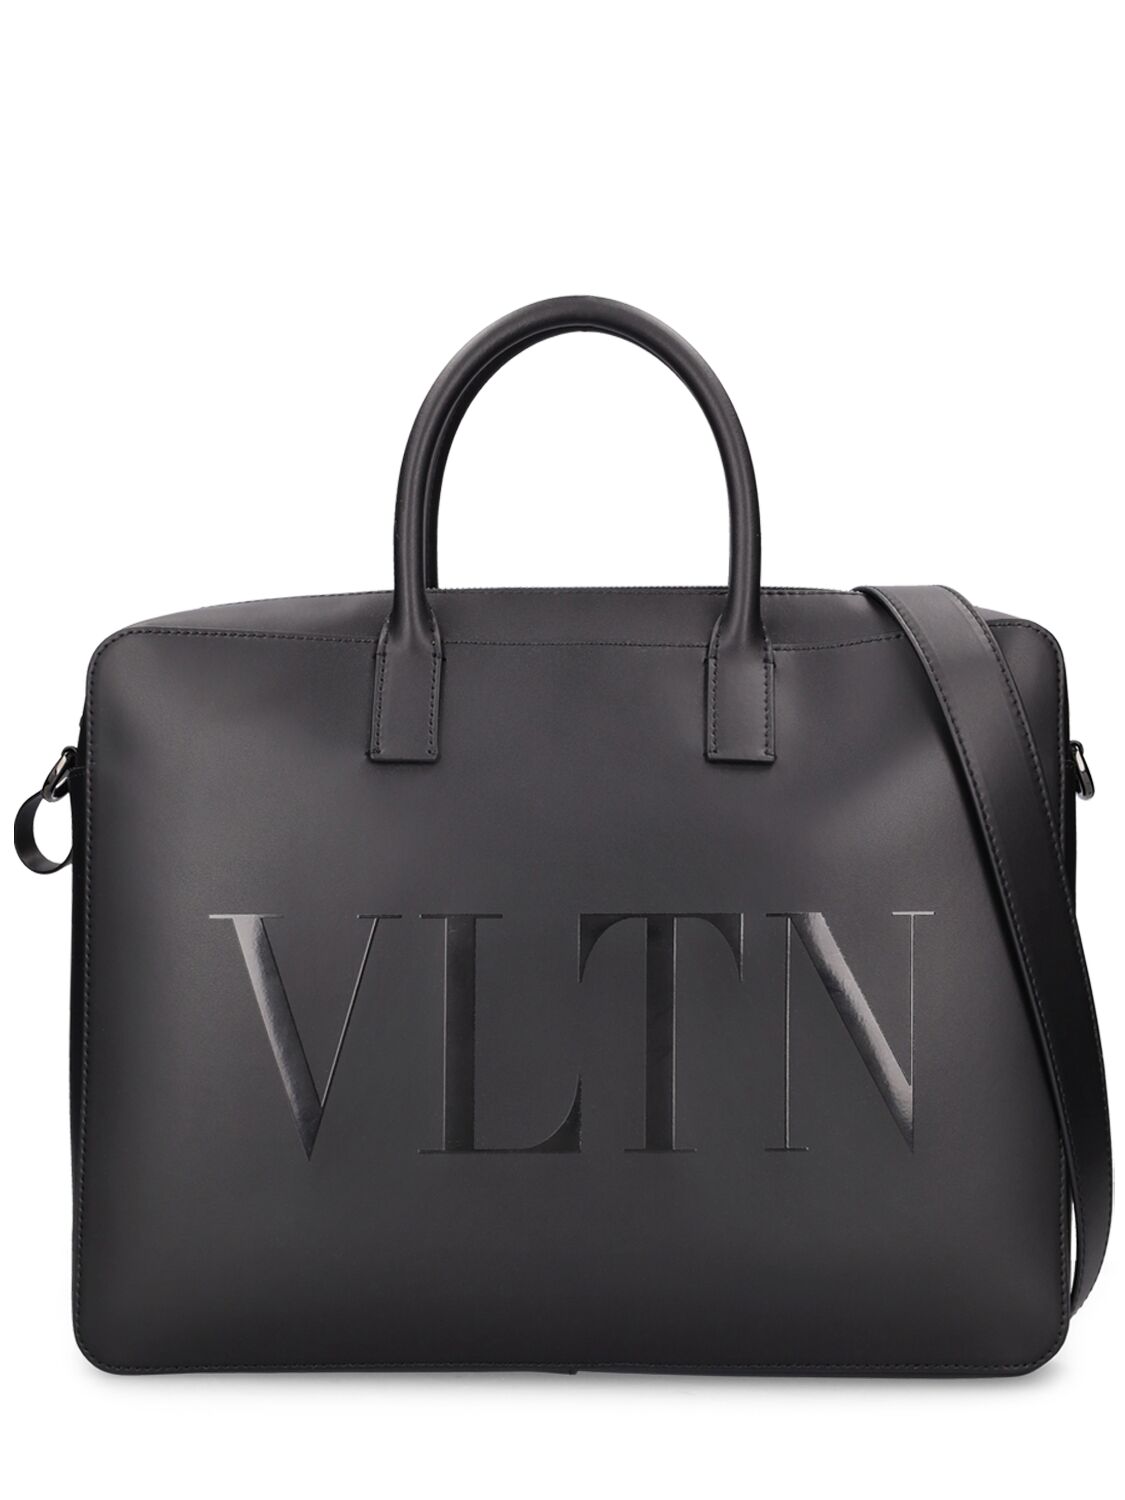 Image of Vltn Leather Brief Case